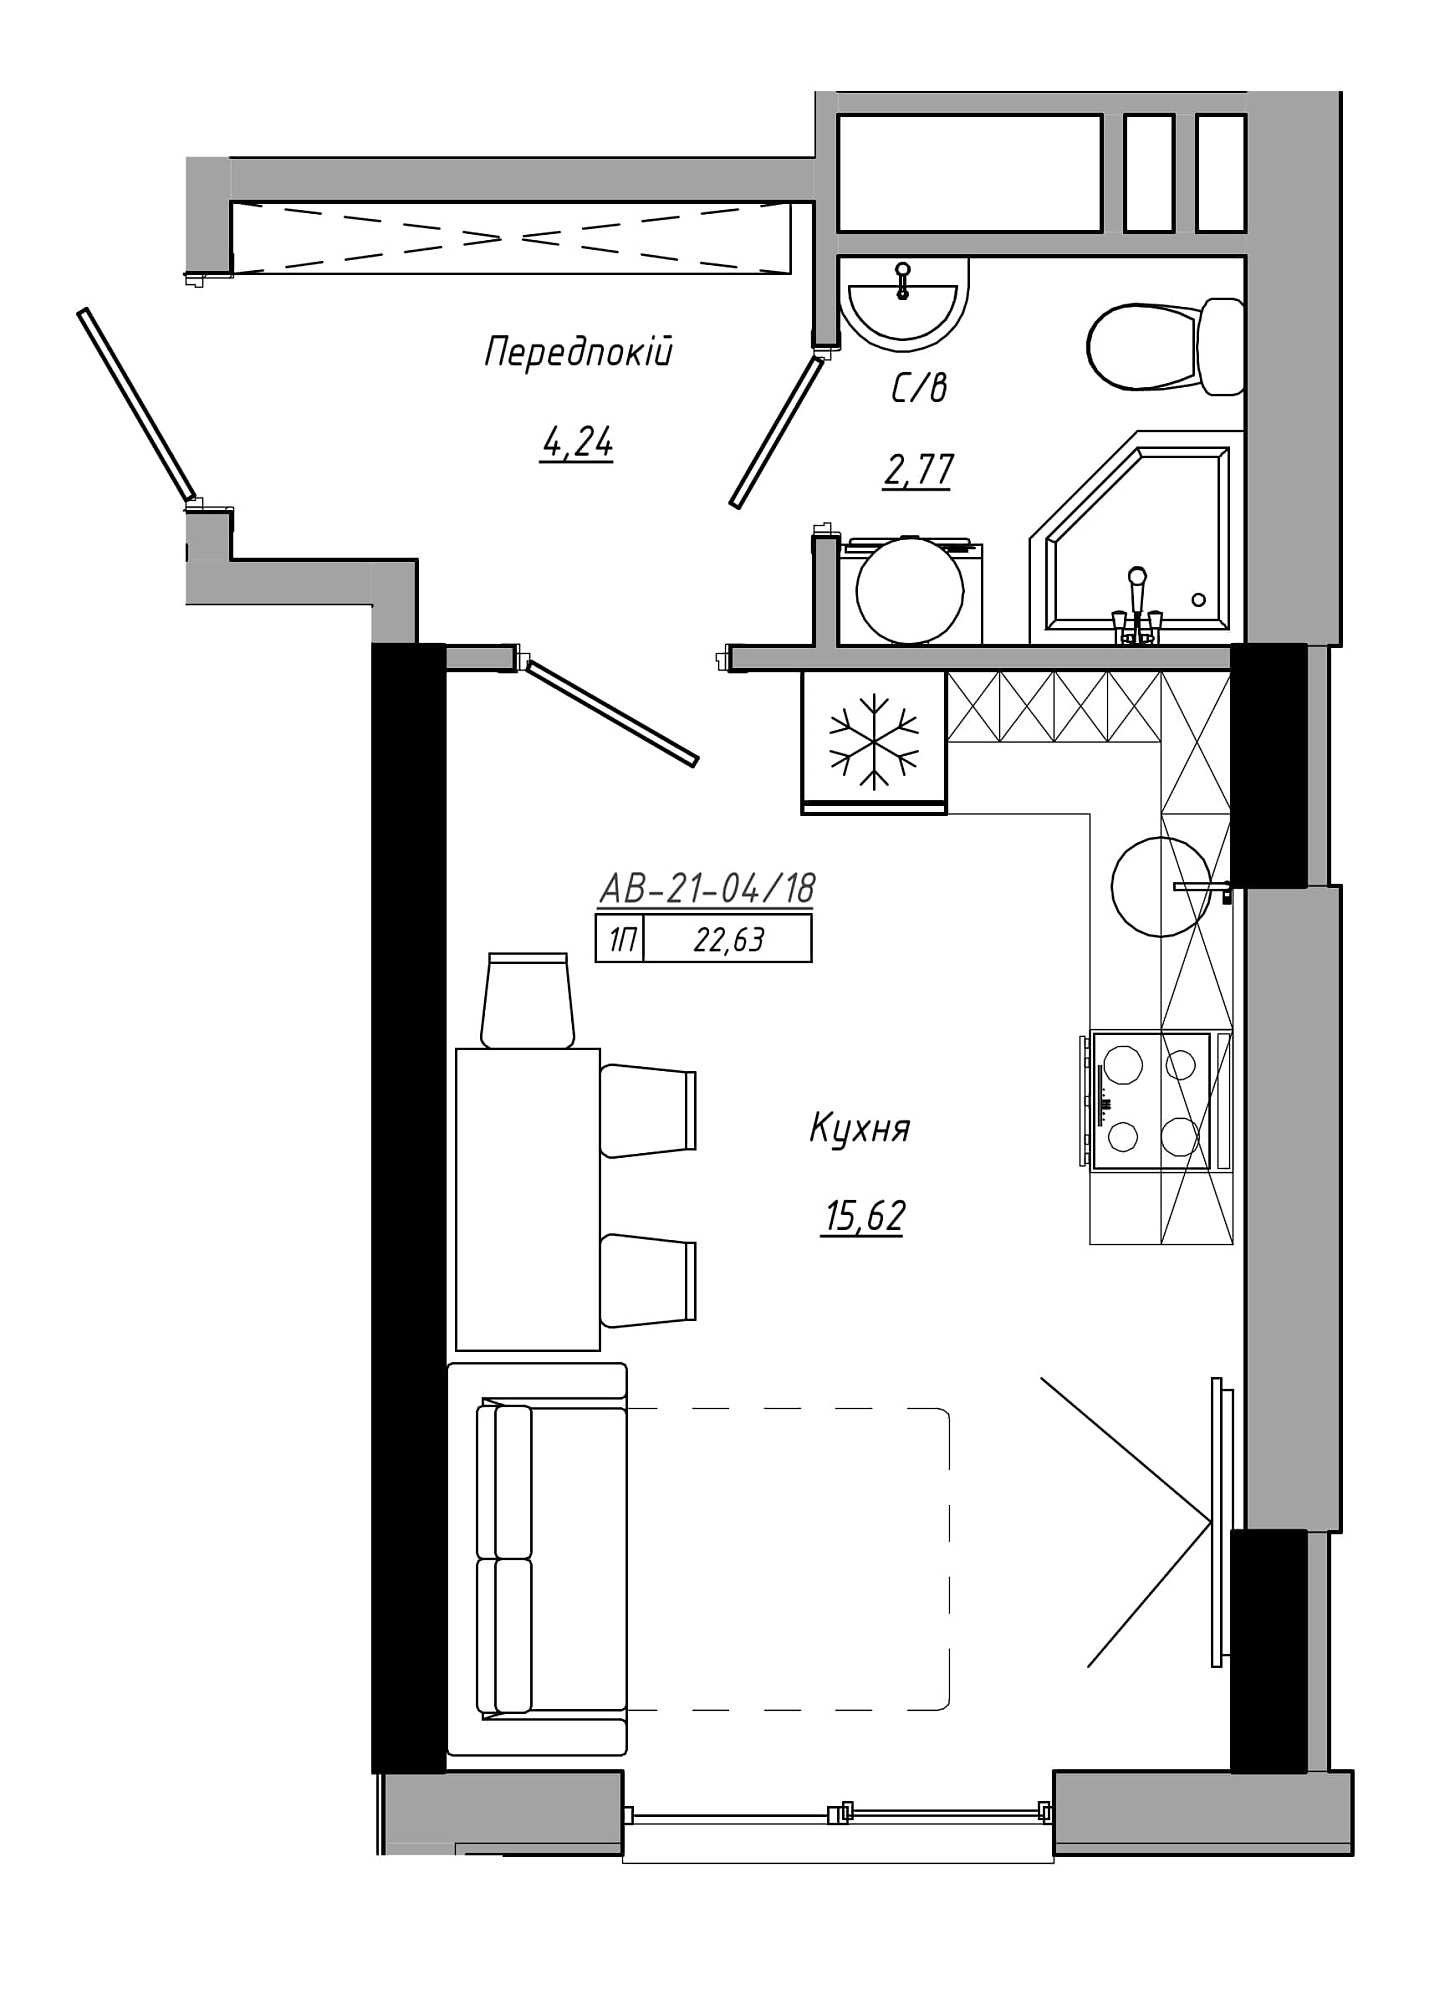 Планування Smart-квартира площею 22.63м2, AB-21-04/00018.